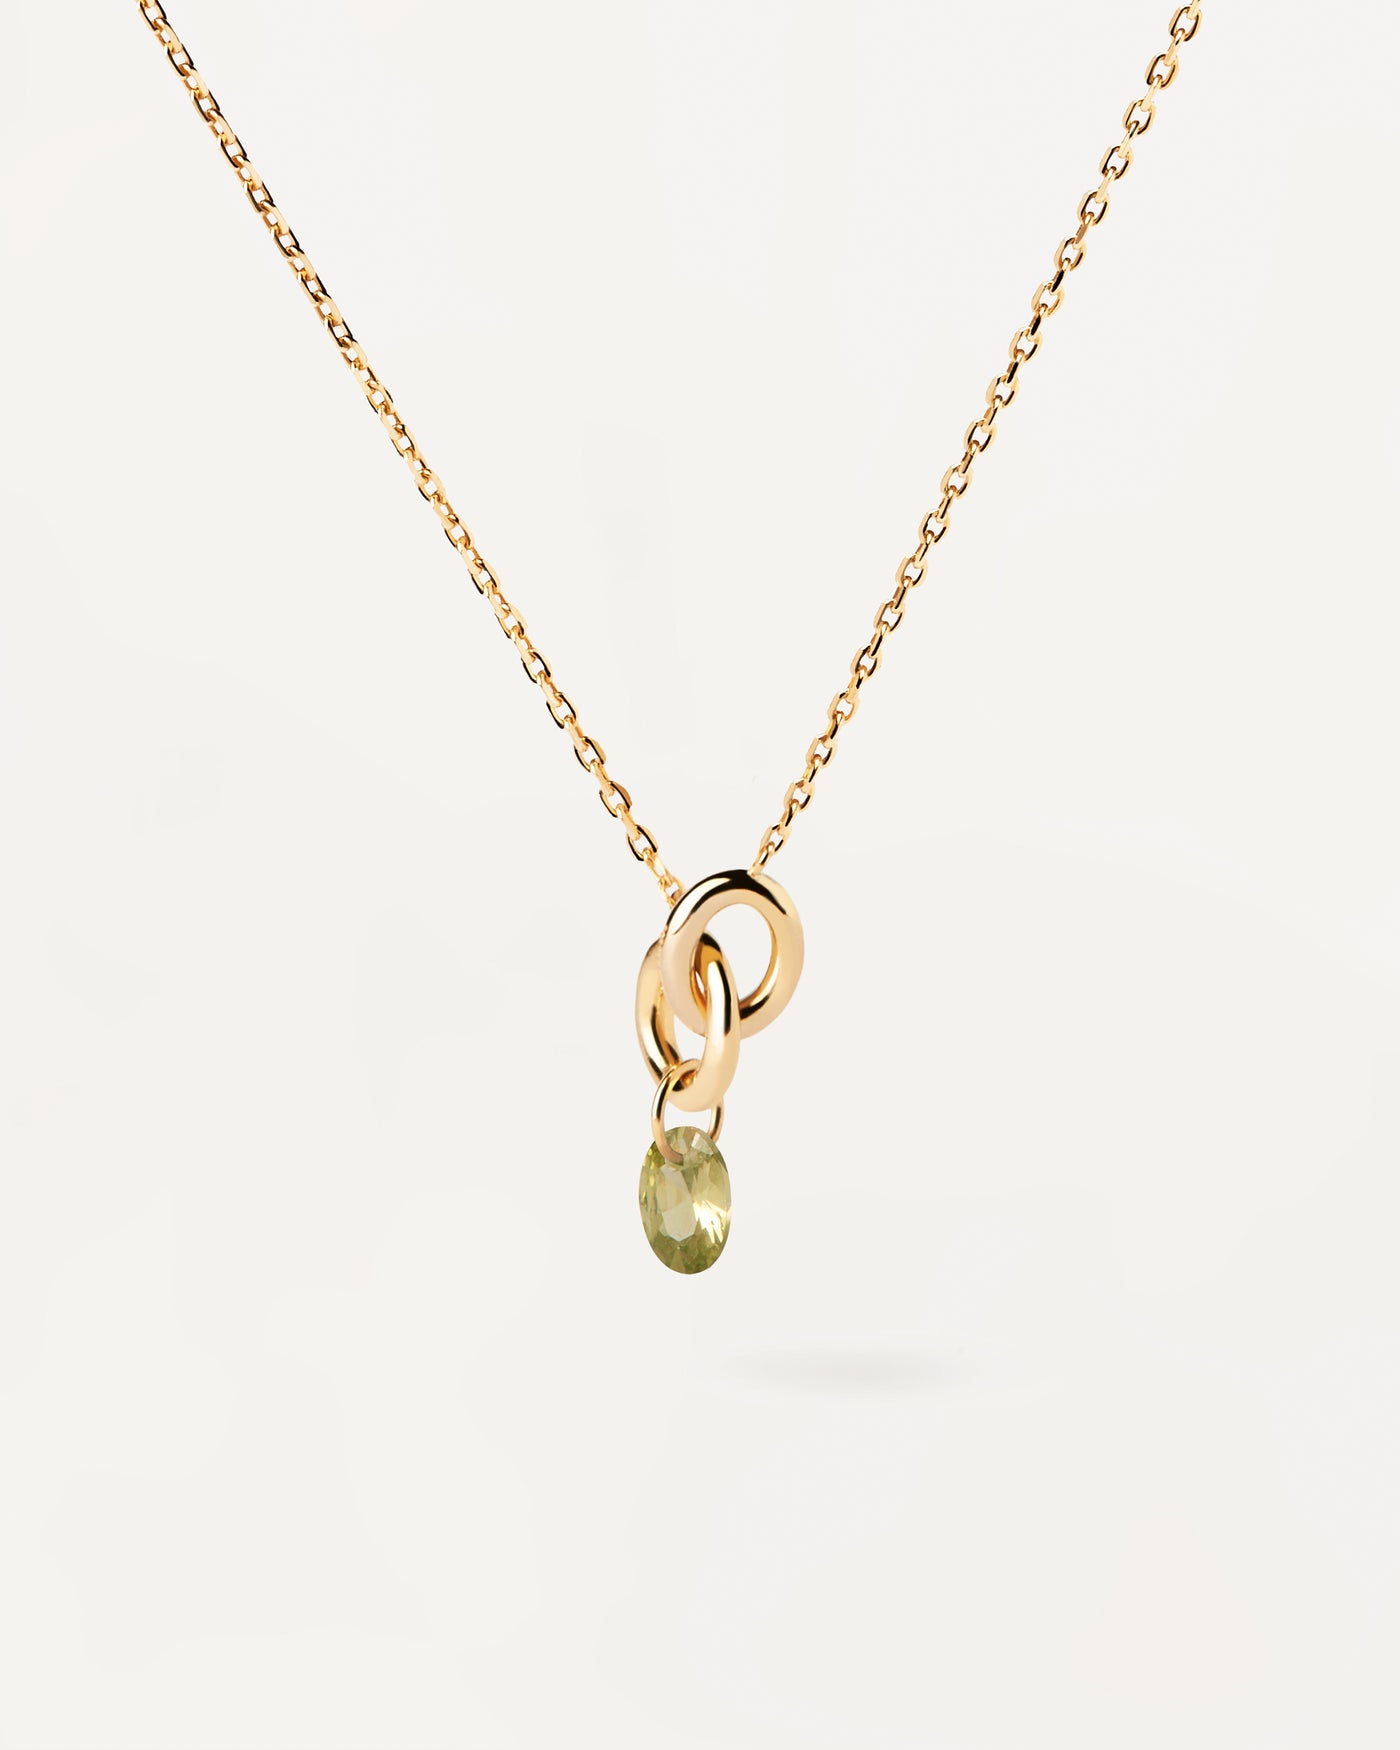 Lily Grüner halskette. Vergoldete Halskette mit zwei ineinandergreifenden Ringen und grüner Zirkonia-Anhänger. Erhalten Sie die neuesten Produkte von PDPAOLA. Geben Sie Ihre Bestellung sicher auf und erhalten Sie diesen Bestseller.